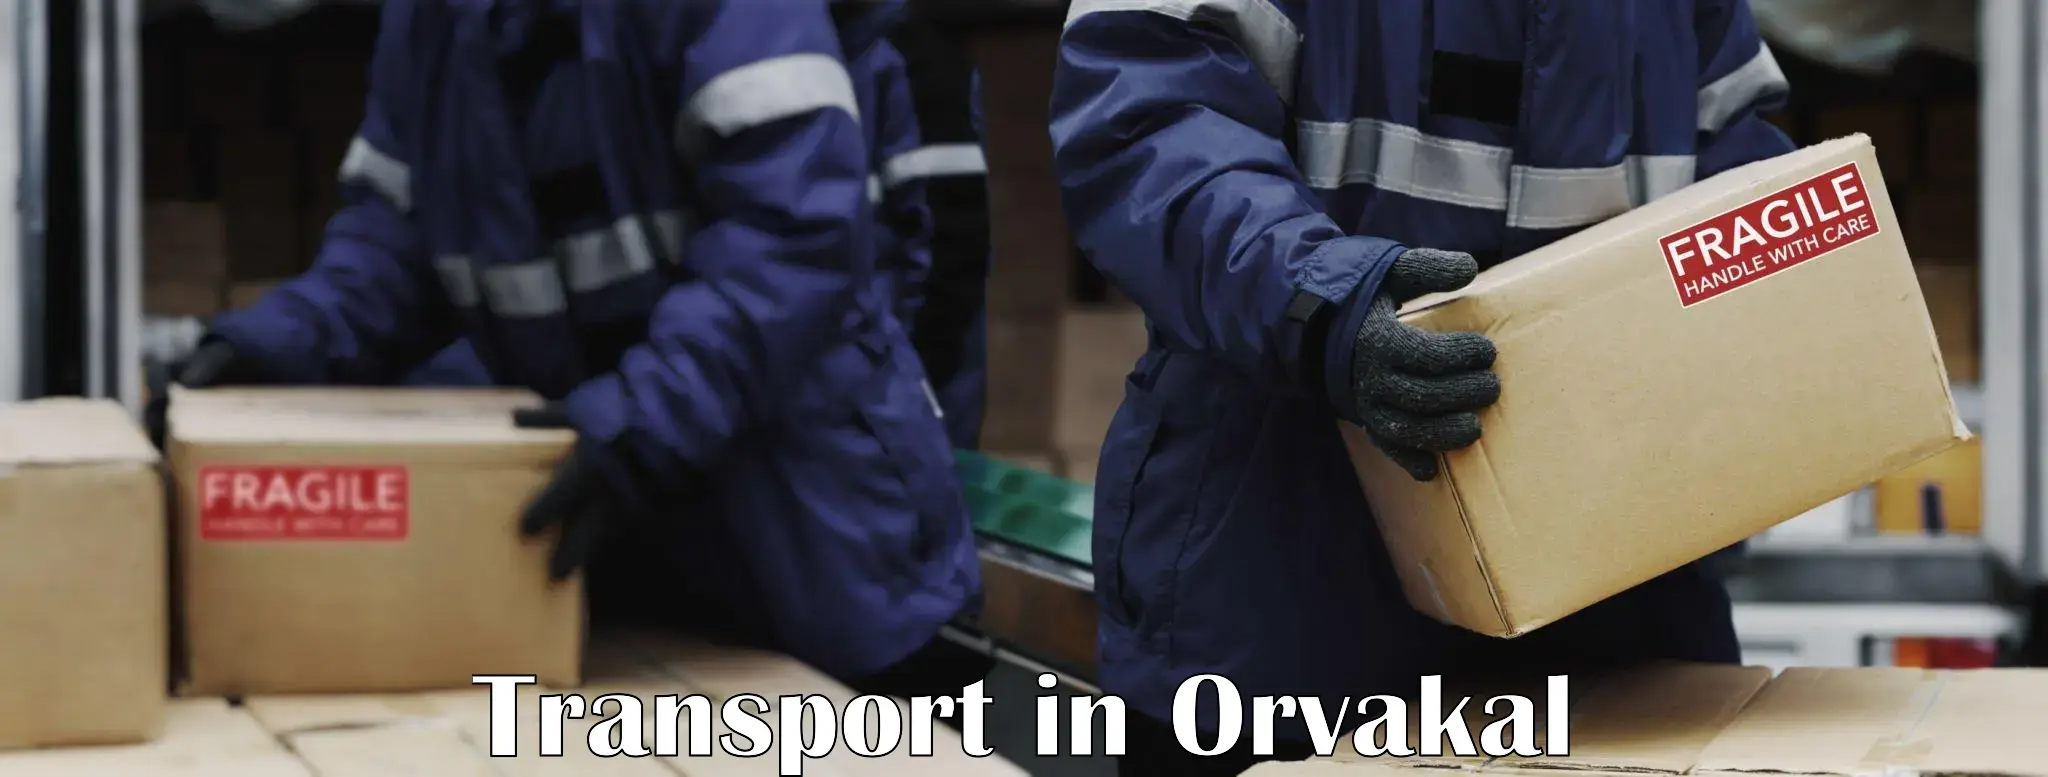 Nearest transport service in Orvakal